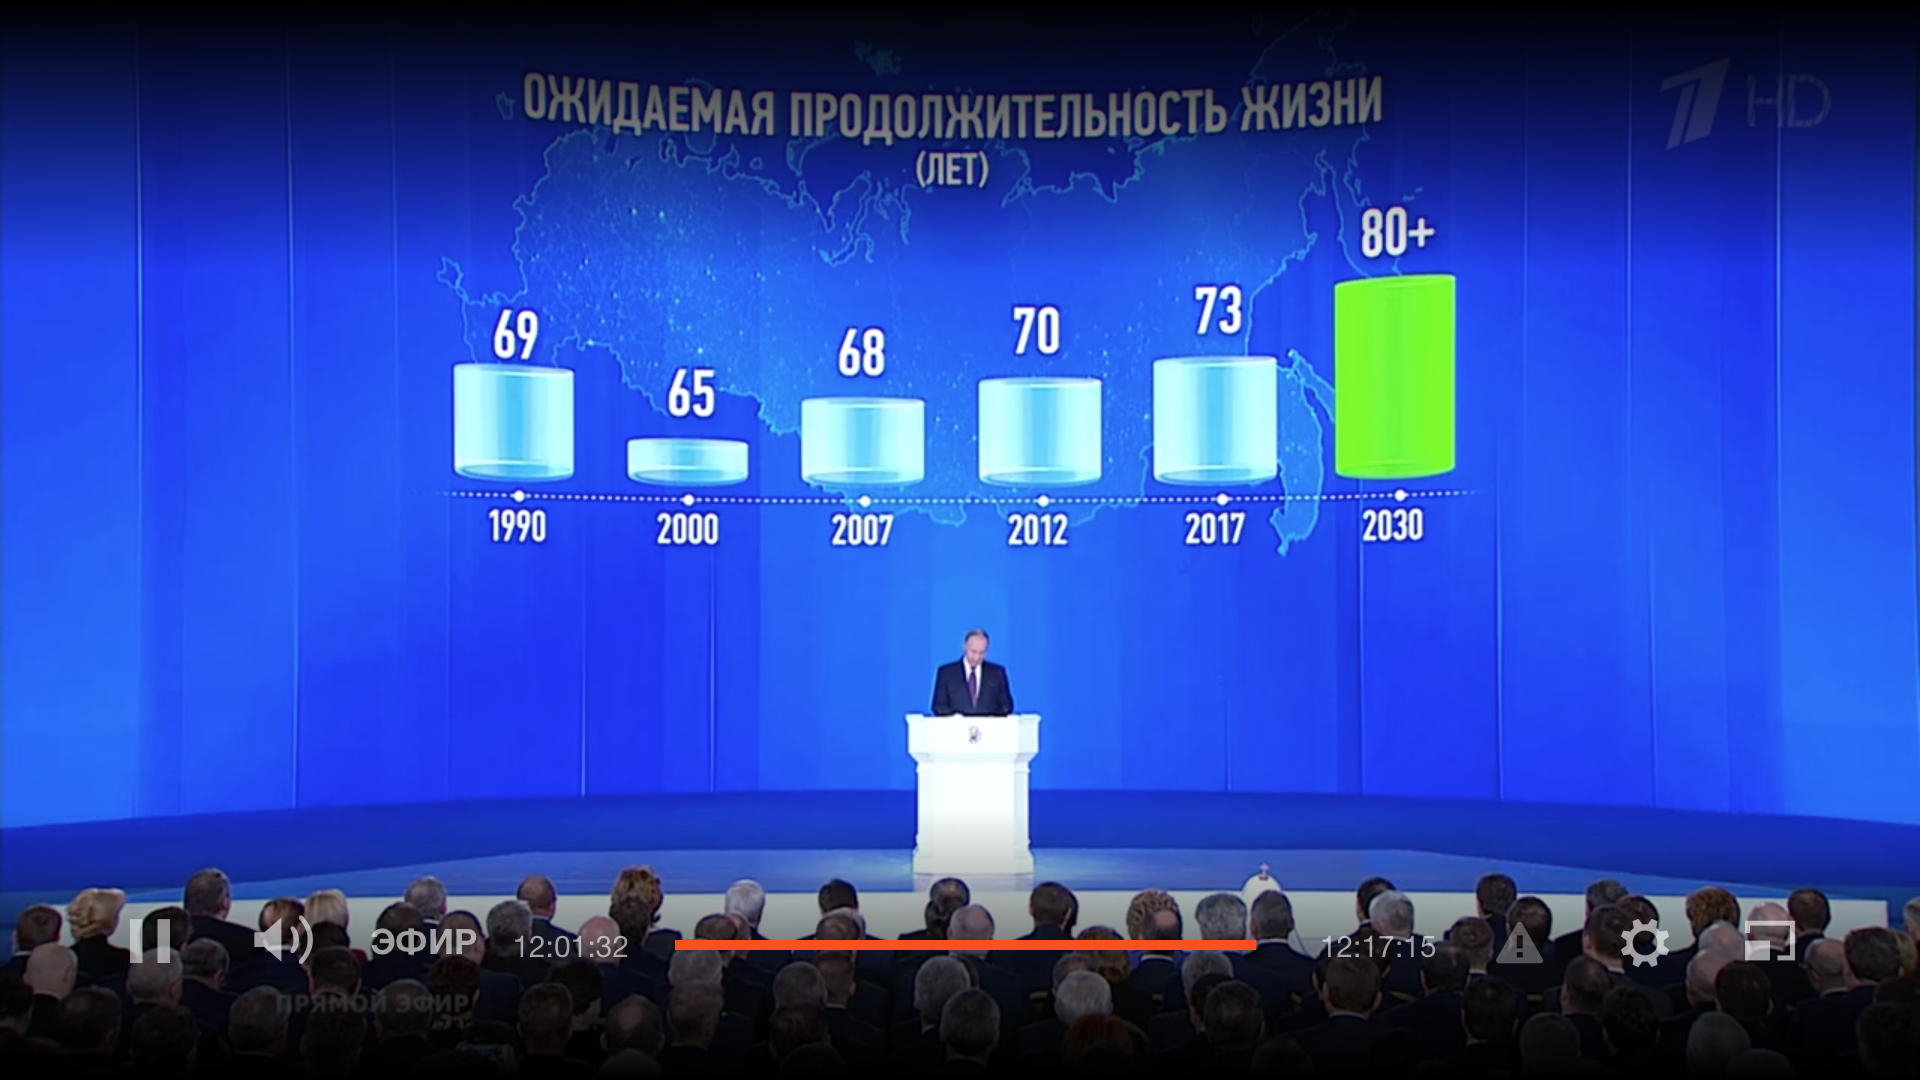 Жизнь за 80+: что нового сказал Владимир Путин в ежегодном Послании